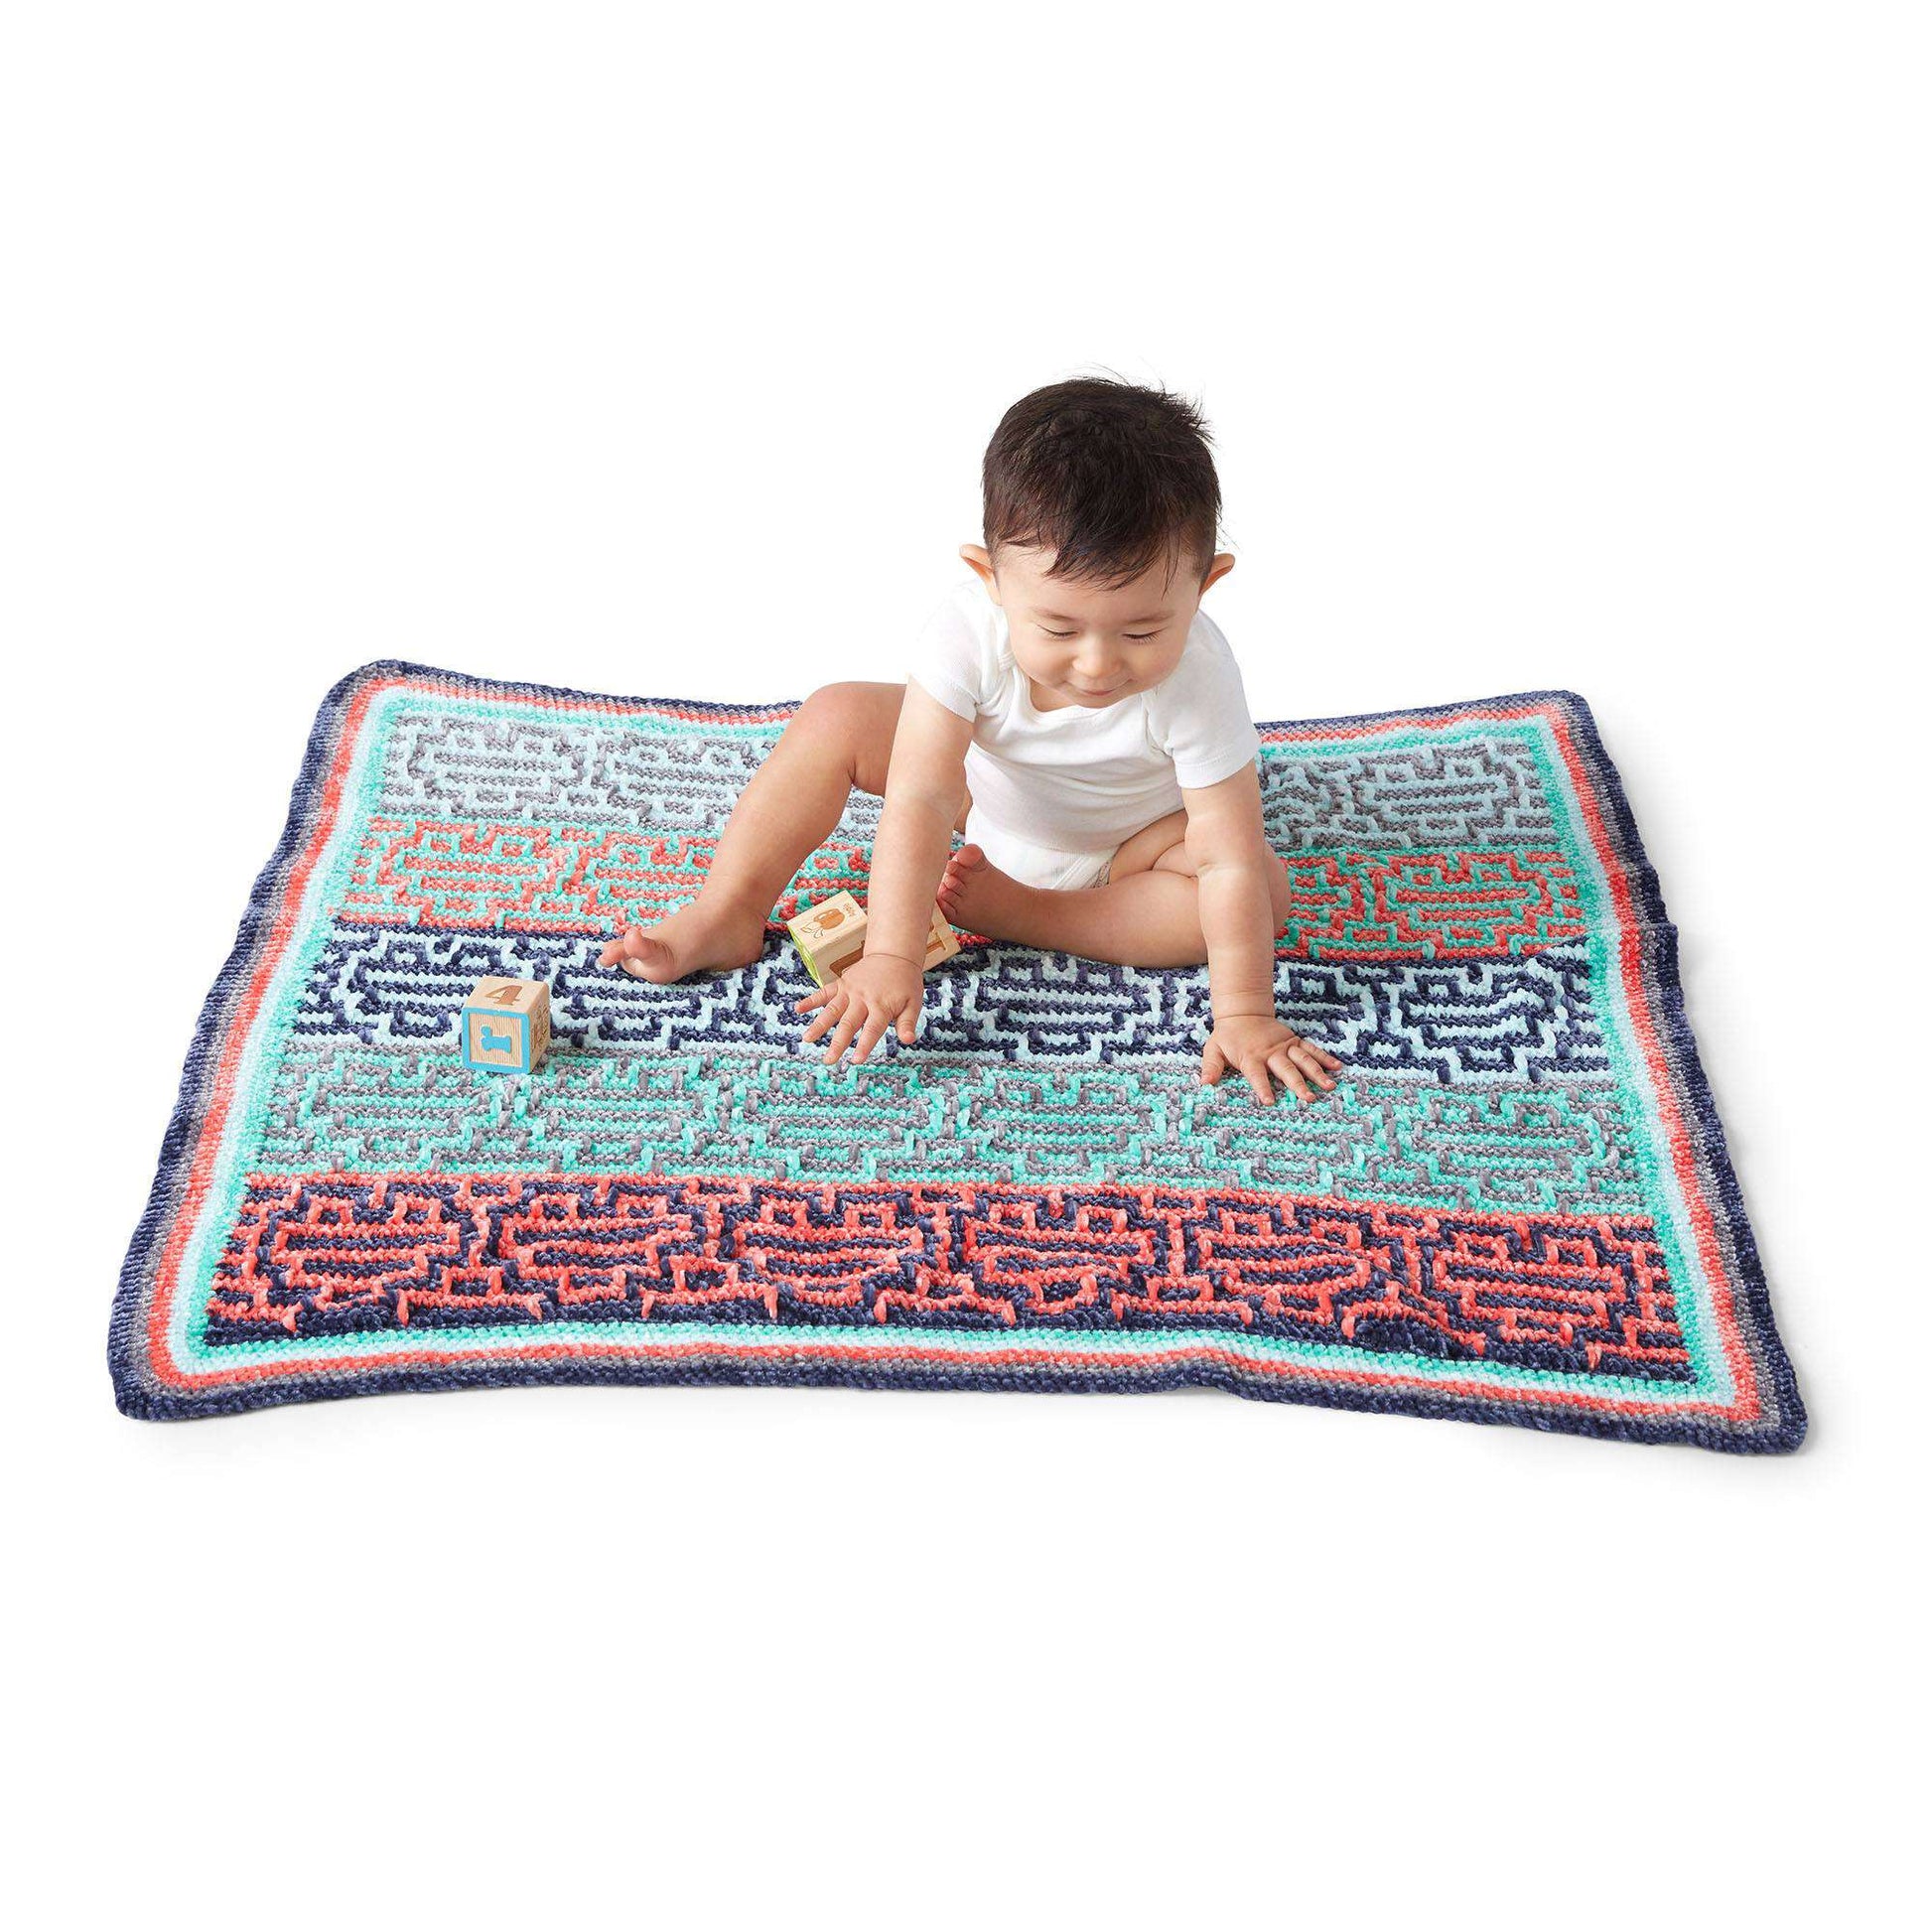 Free Bernat Party Heart-Y Mosaic Crochet Baby Blanket Pattern